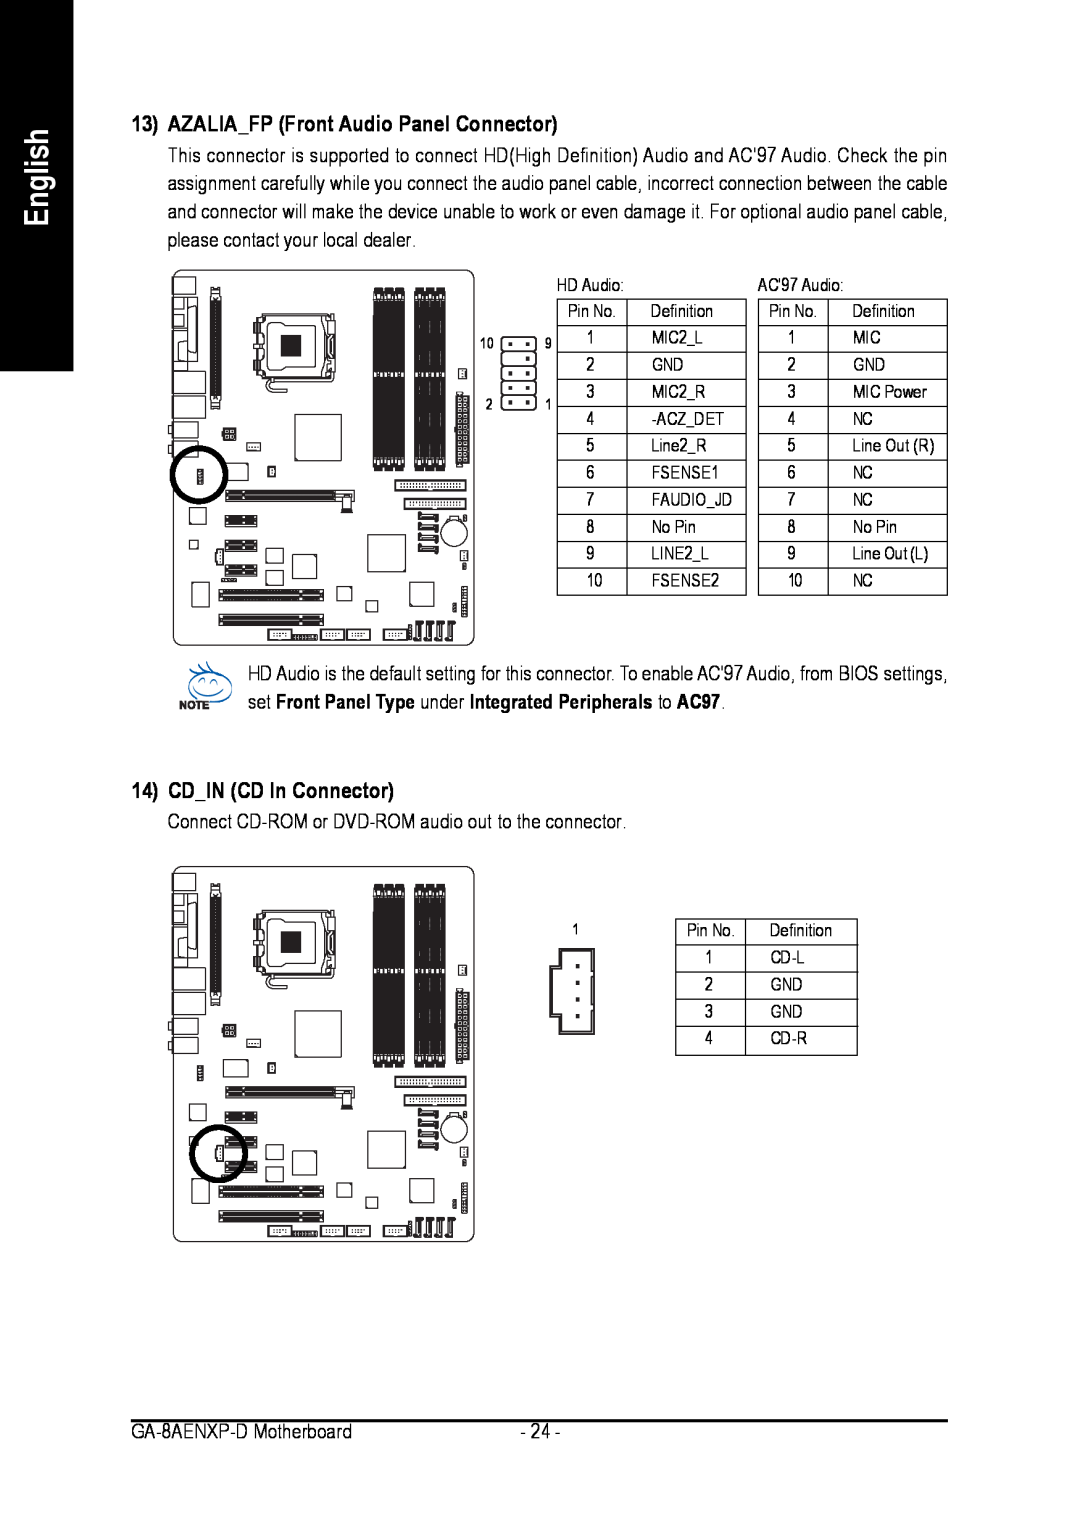 Gigabyte GA-8AENXP-D user manual AZALIAFP Front Audio Panel Connector, CDIN CD In Connector, English 